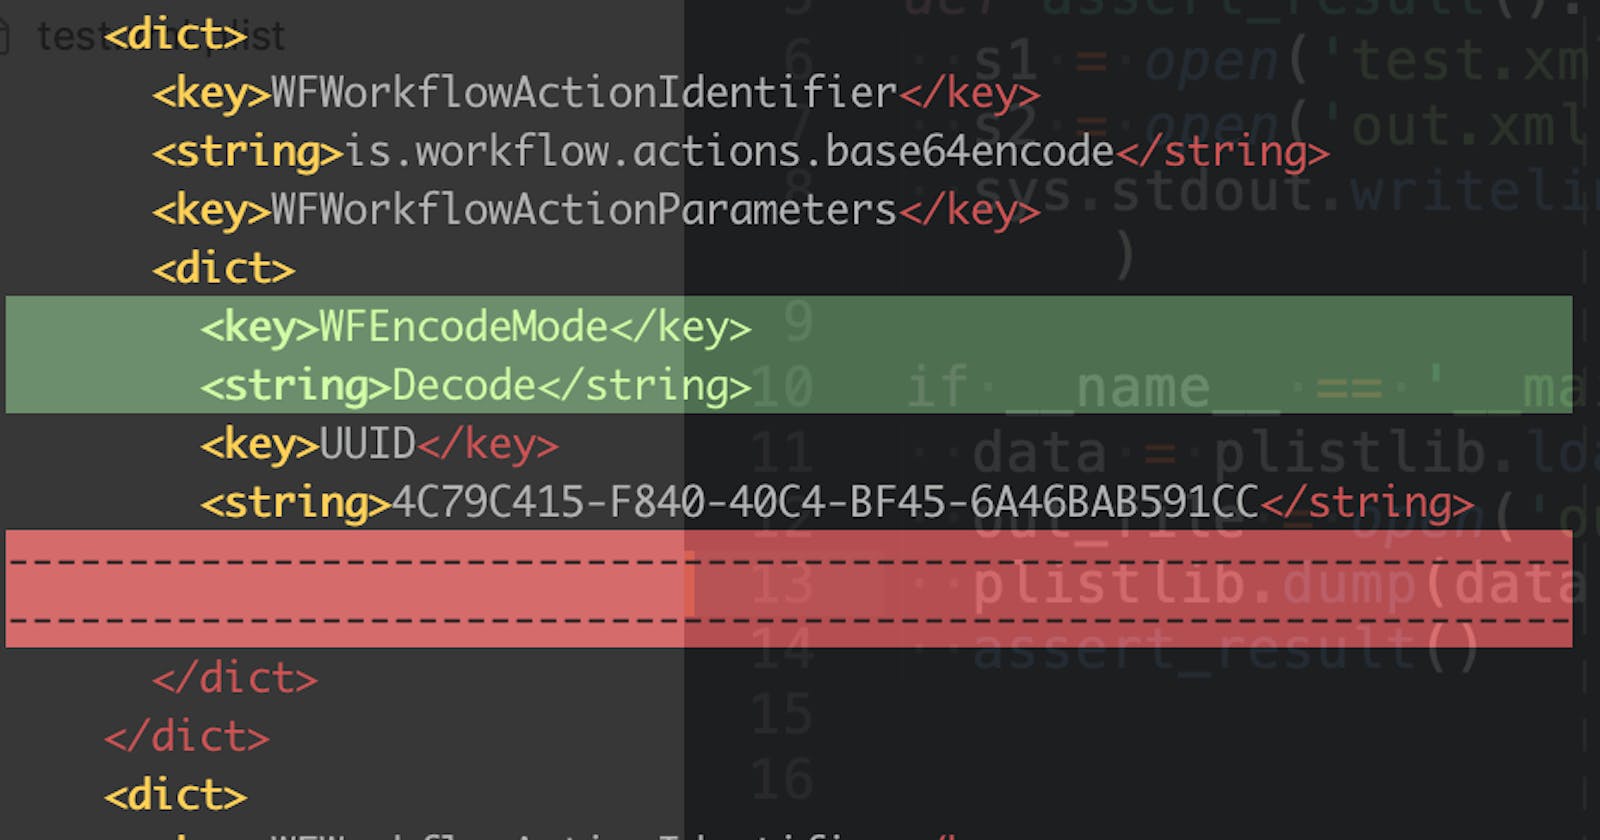 使用 python3 plistlib 修改 plist 文件时保持 key 的顺序不变